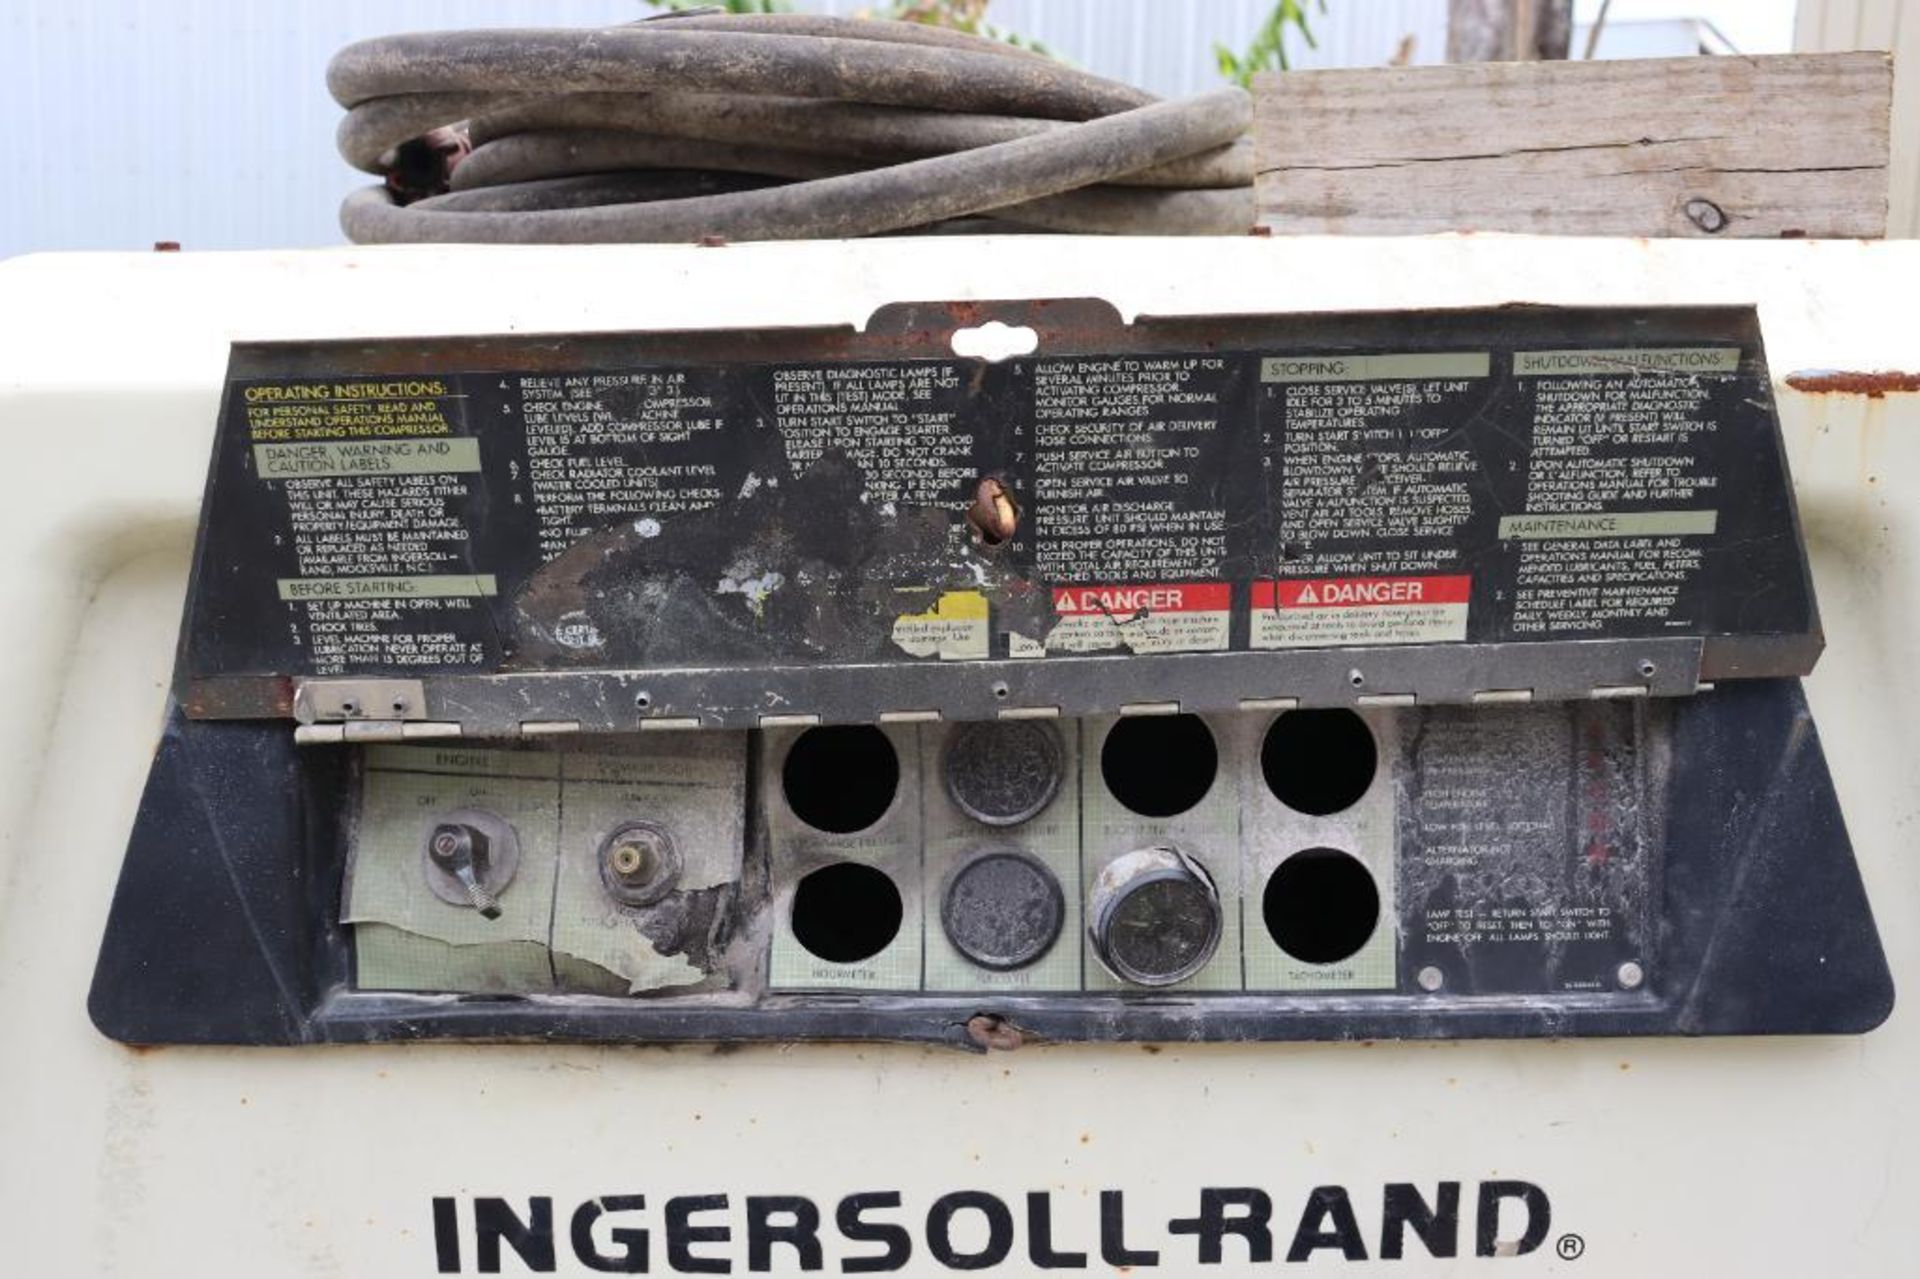 Ingersoll- Rand 185 diesel air compressor - Image 7 of 14